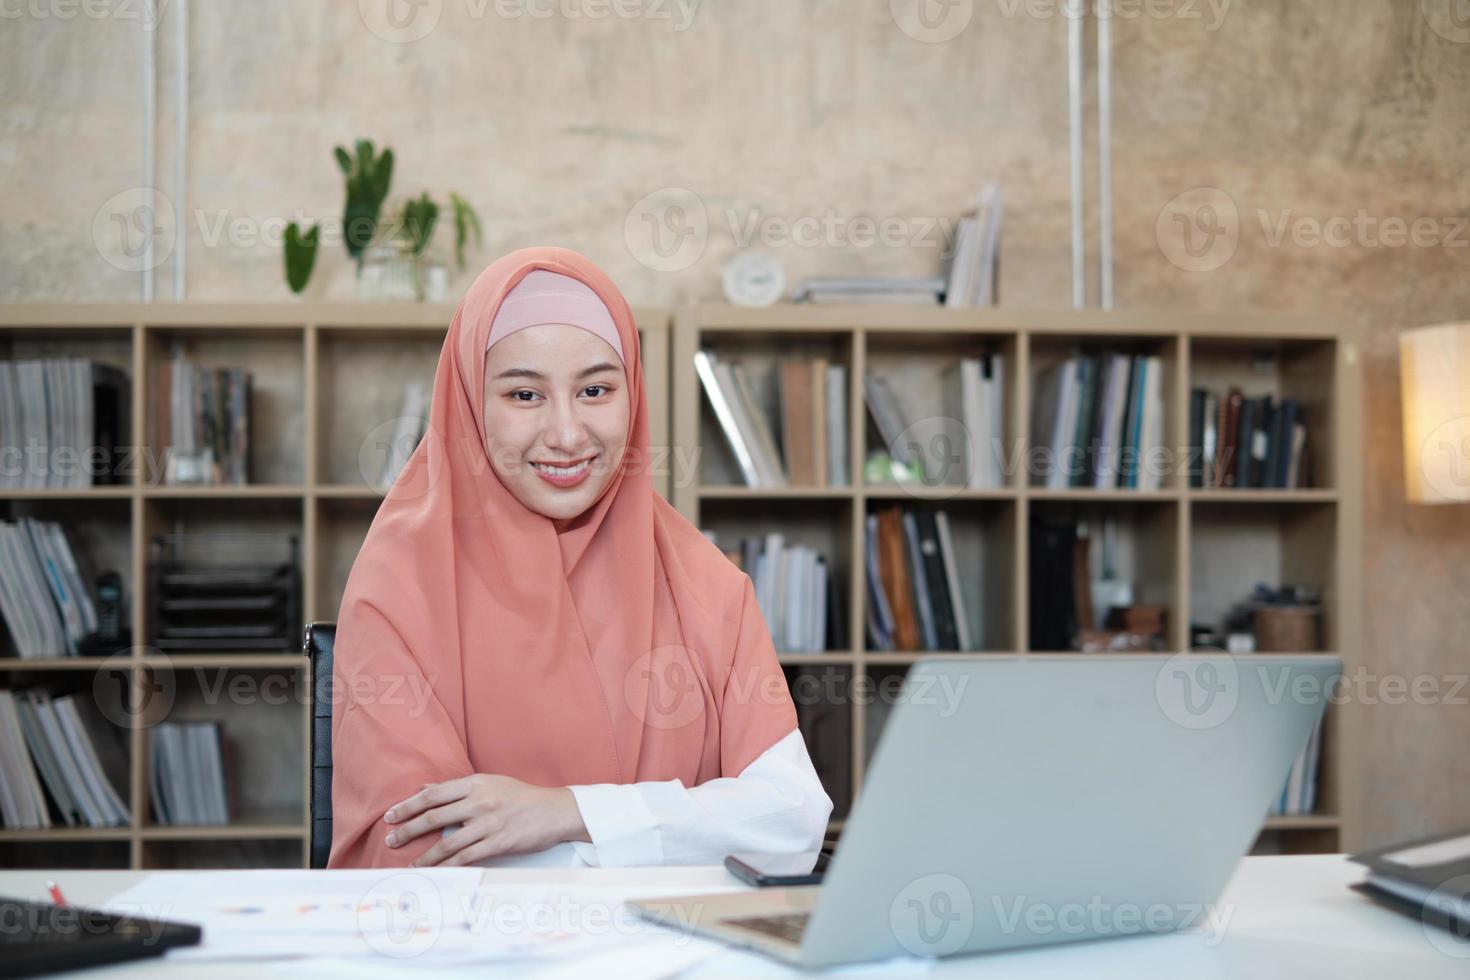 ritratto di un bellissimo fondatore di attività di avvio che è una persona di sesso femminile islamica con l'hijab, sorridente e guardando la fotocamera in un piccolo ufficio sul posto di lavoro, lavorando con il laptop su una scrivania bianca, uno scaffale dietro. foto